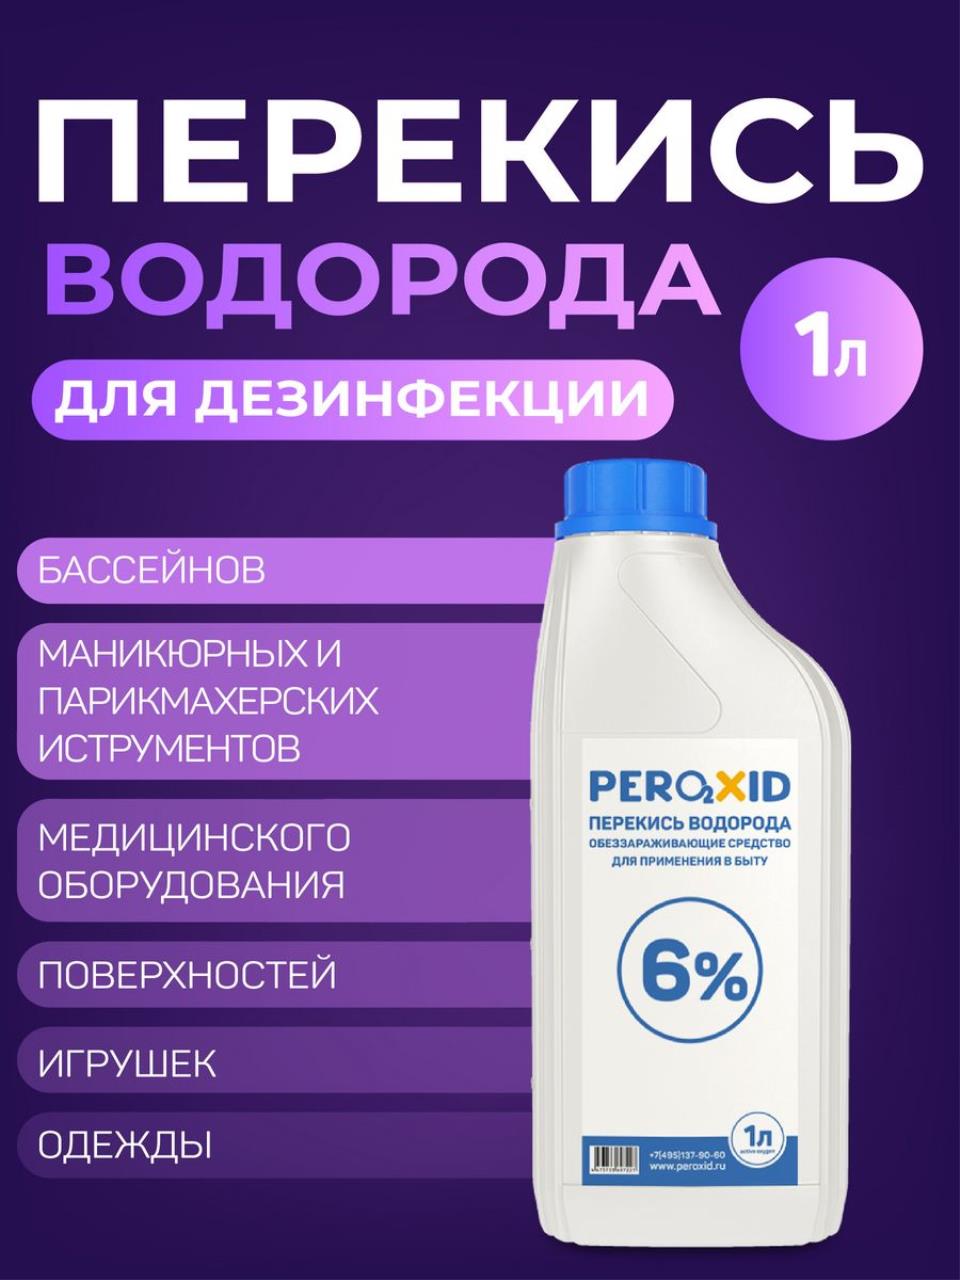 Перекись водорода PEROXID медицинская, для дезинфекции, 1 литр